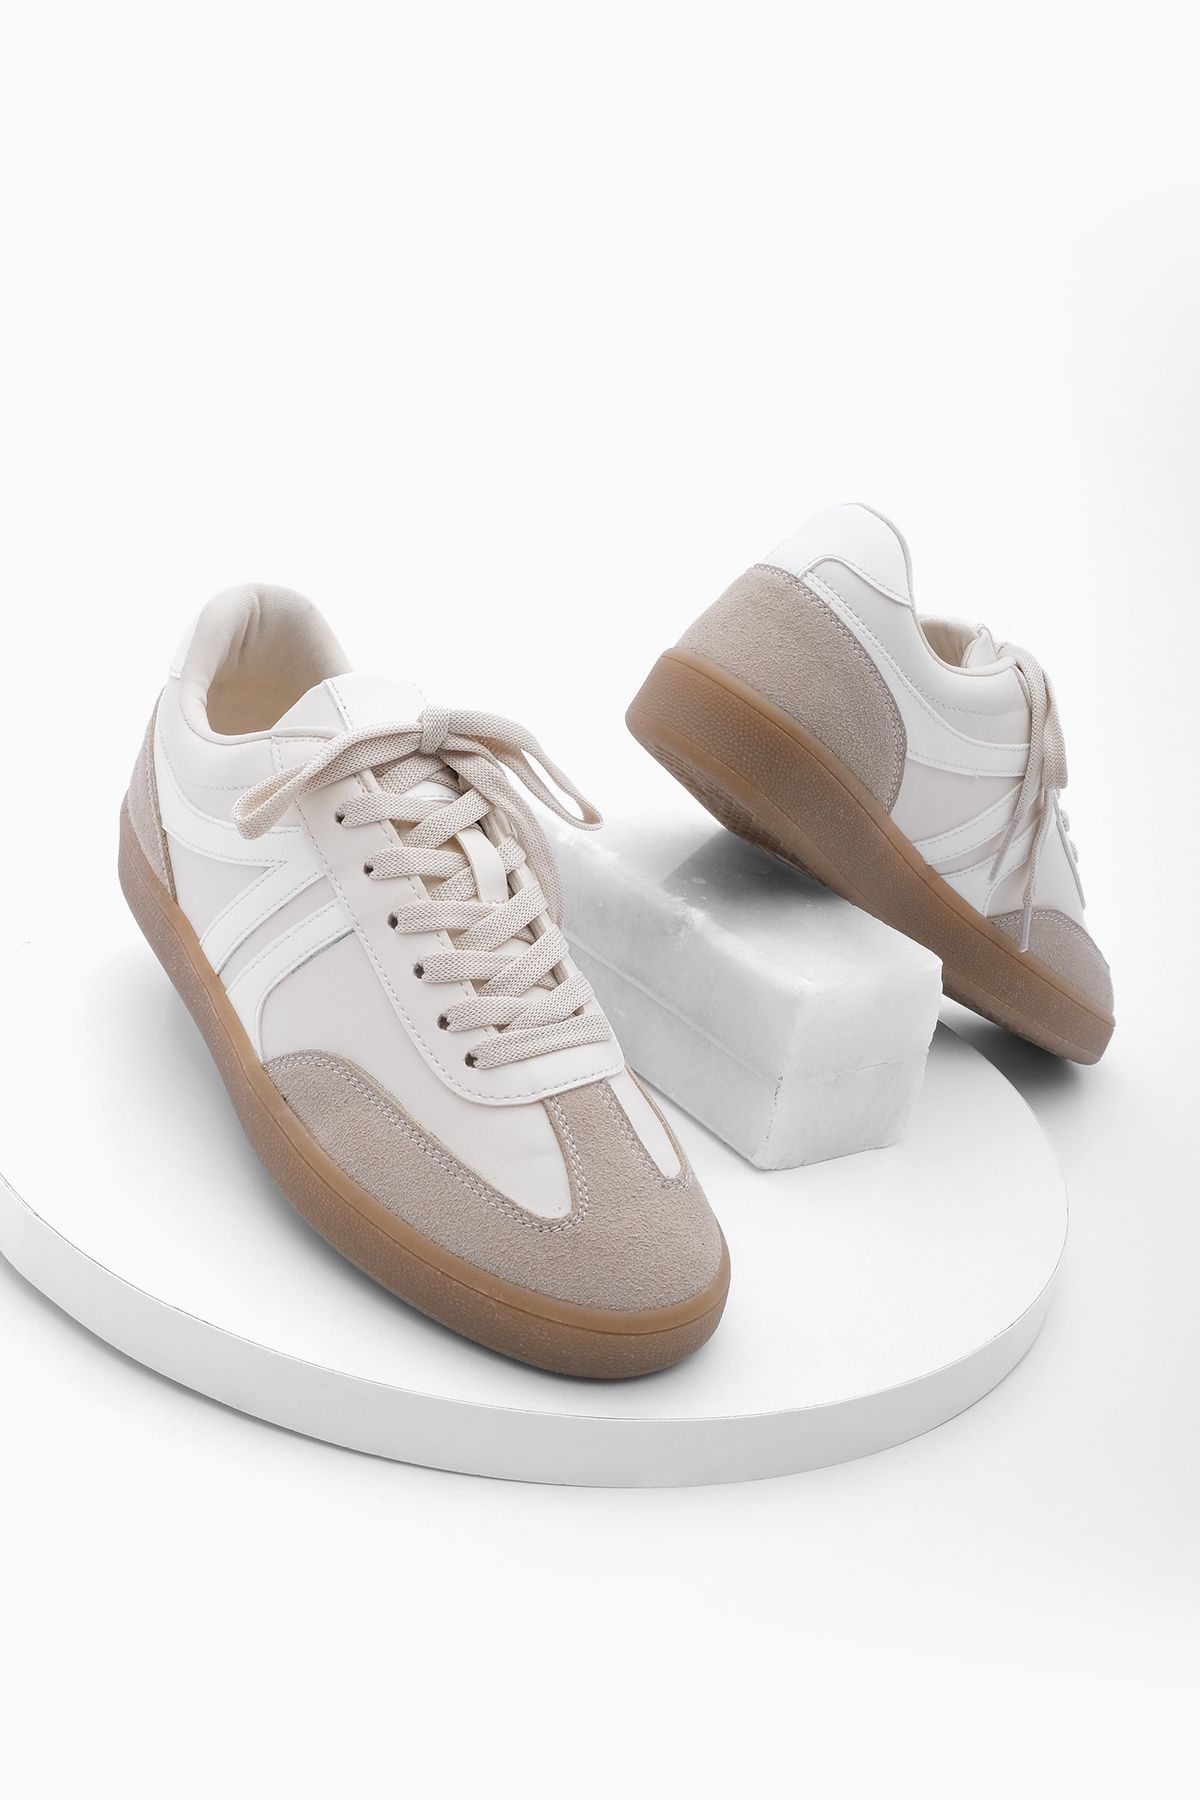 Marjin Kadın Sneaker Bağcıklı Düz Taban Spor Ayakkabı Tiyone Bej